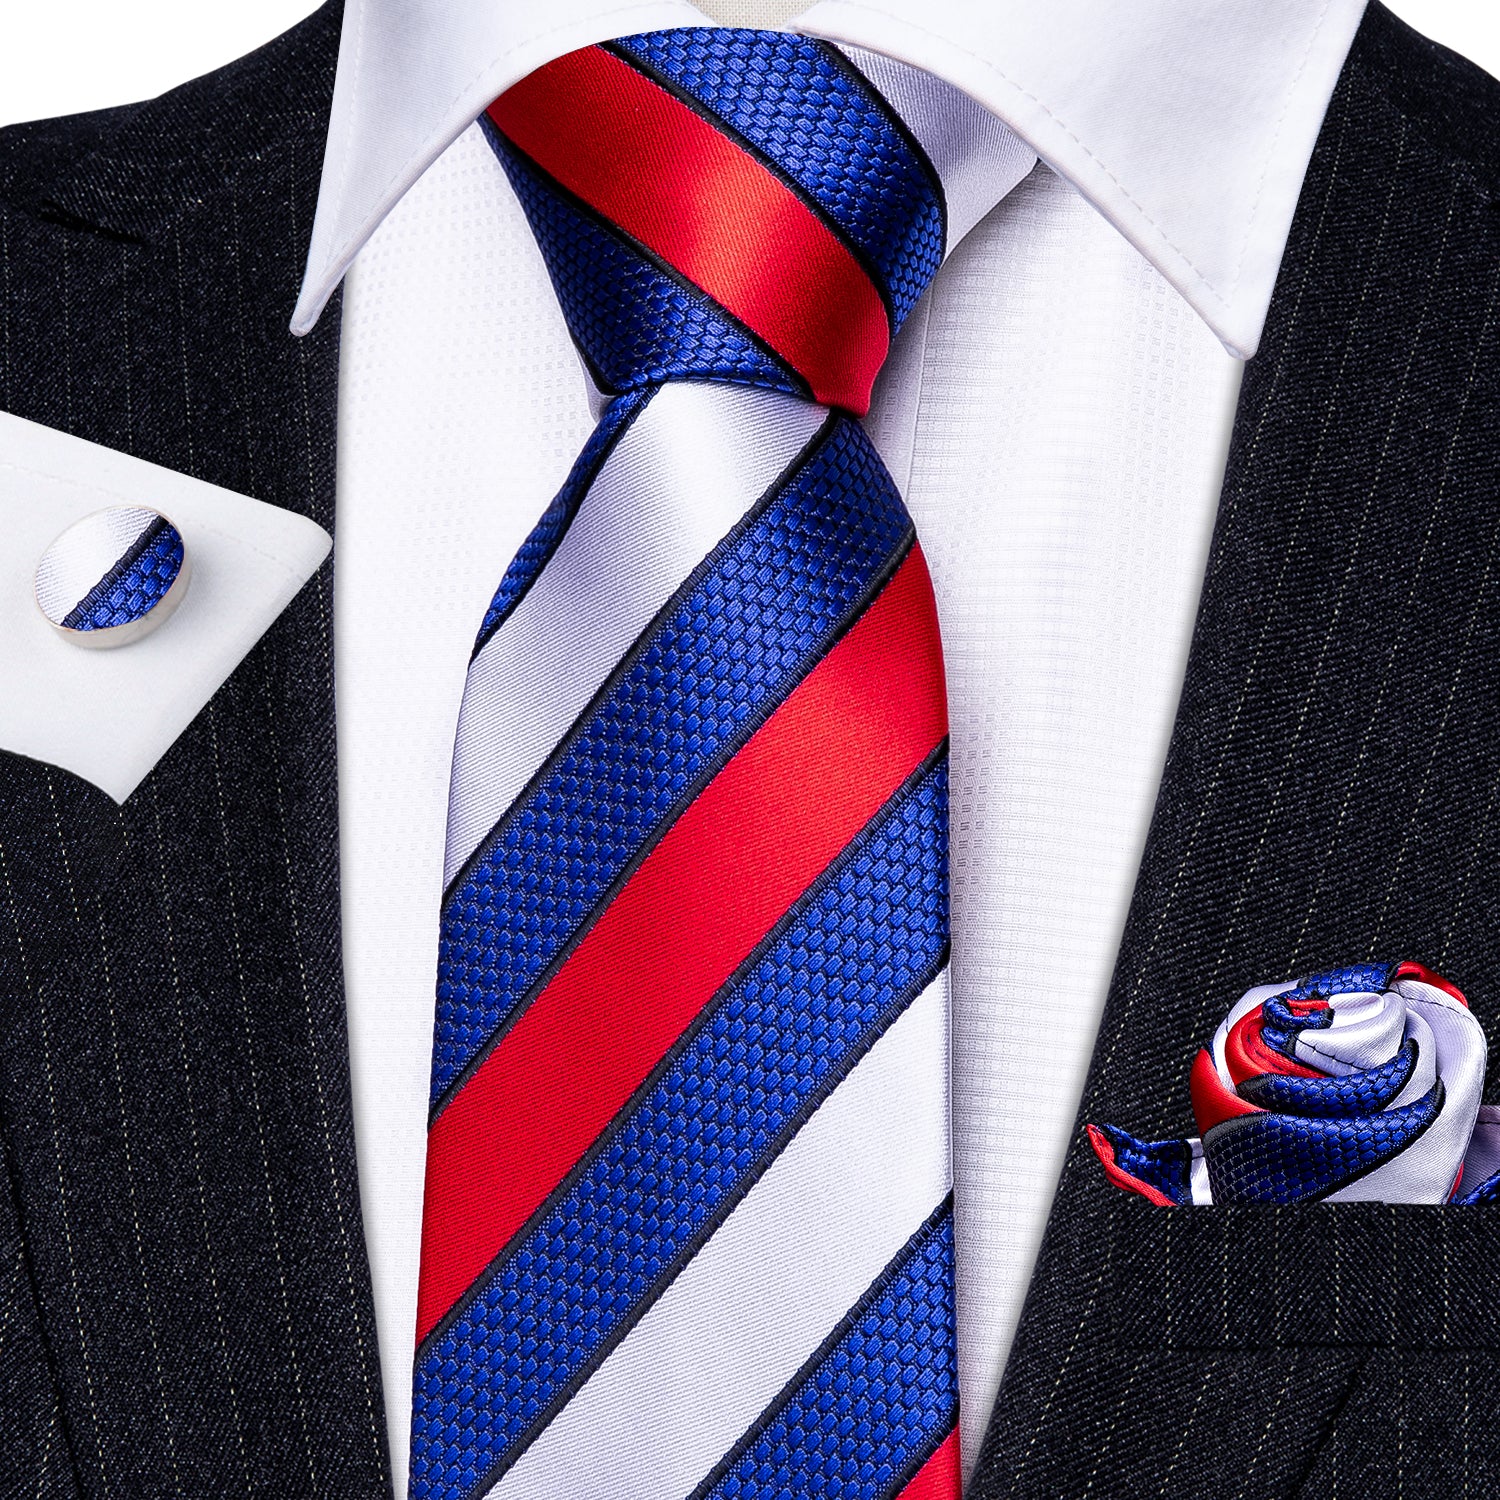 Barry.wang Men's Tie Red White Blue Striped Silk Tie Hanky Cufflinks Set New